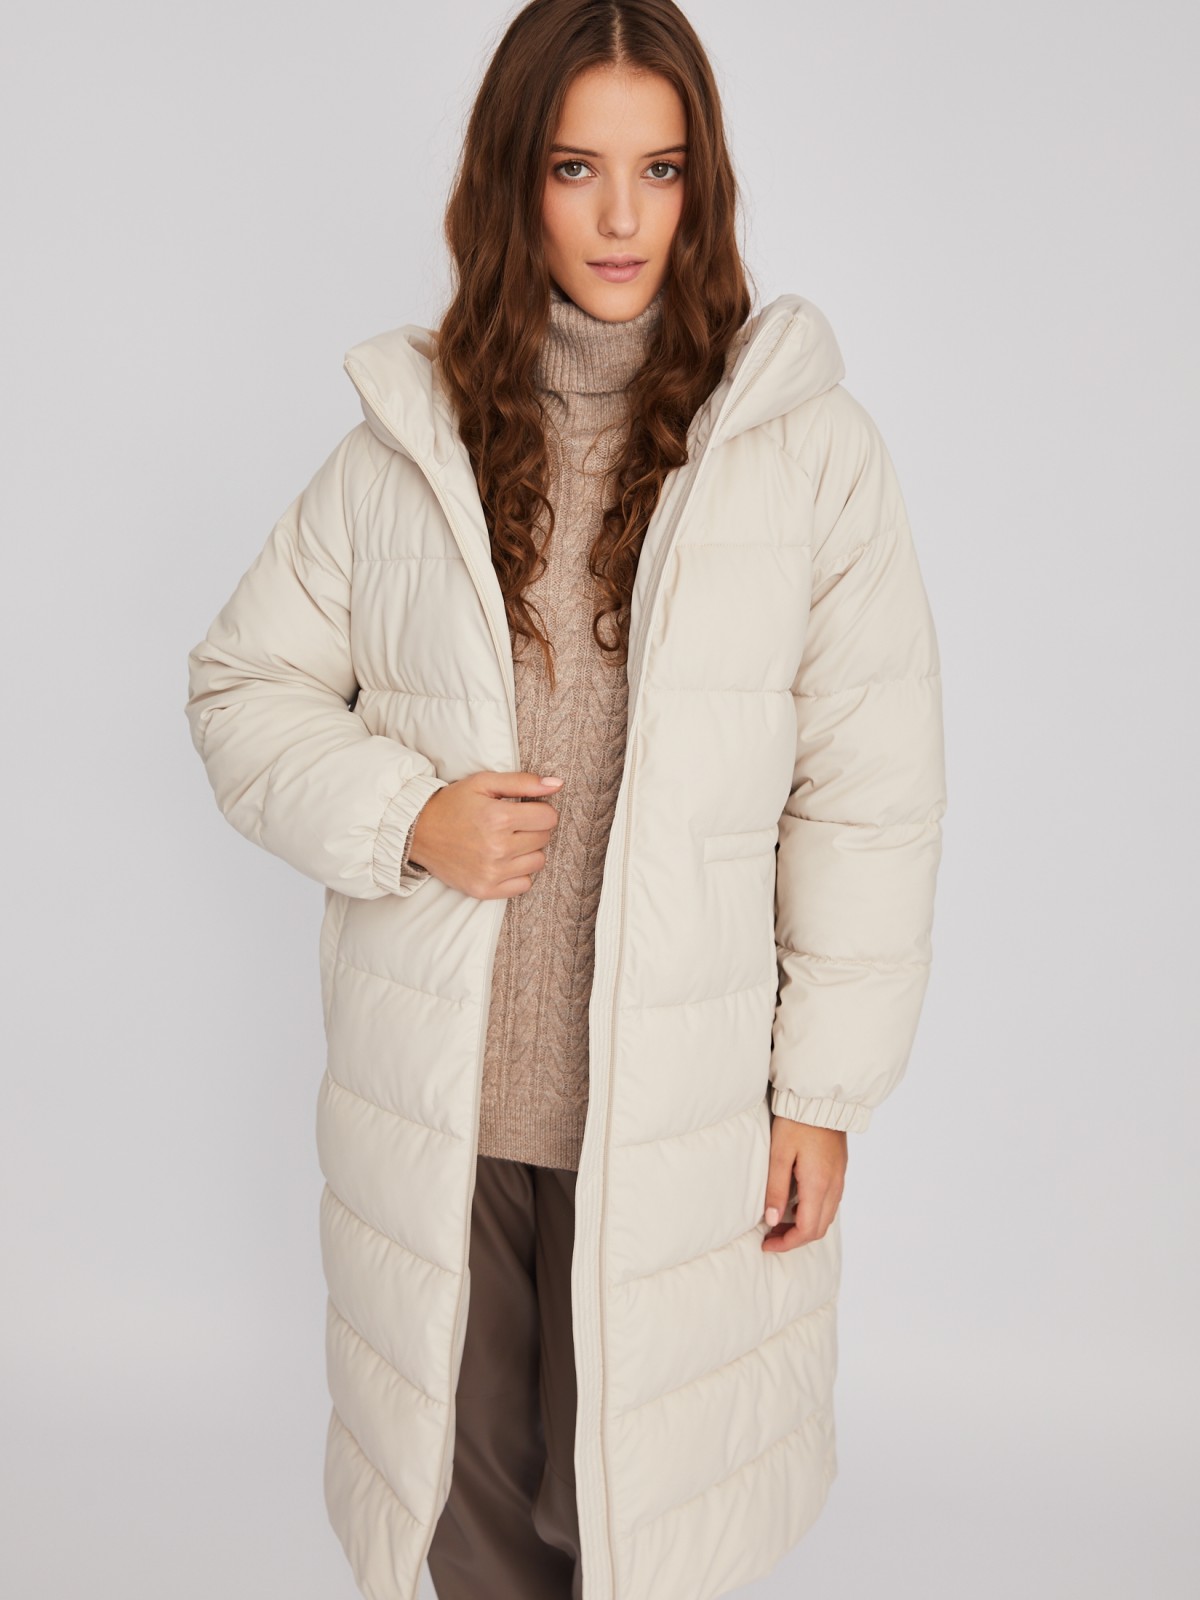 Тёплая длинная куртка-пальто из экокожи с капюшоном и кулиской на талии zolla 02334520L064, цвет молоко, размер XS